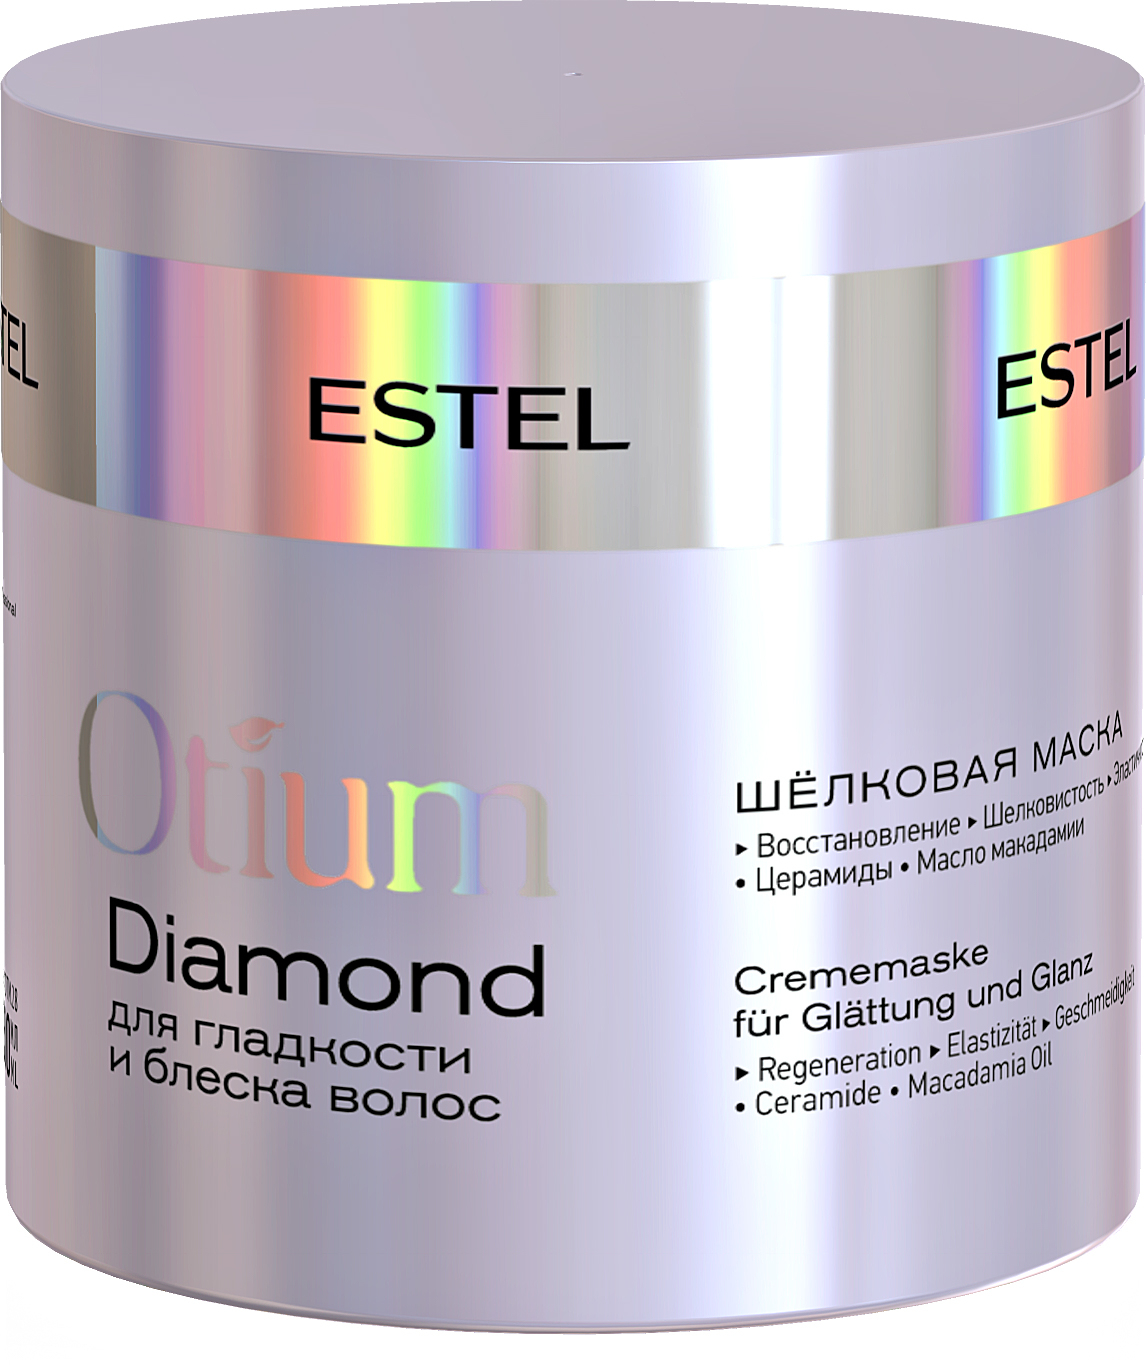 Маски эстель цена. Шёлковая маска для гладкости и блеска волос Otium Diamond, 300. Estel Otium Diamond маска. Маска отиум для гладкости. Маска для волос Эстель Otium.